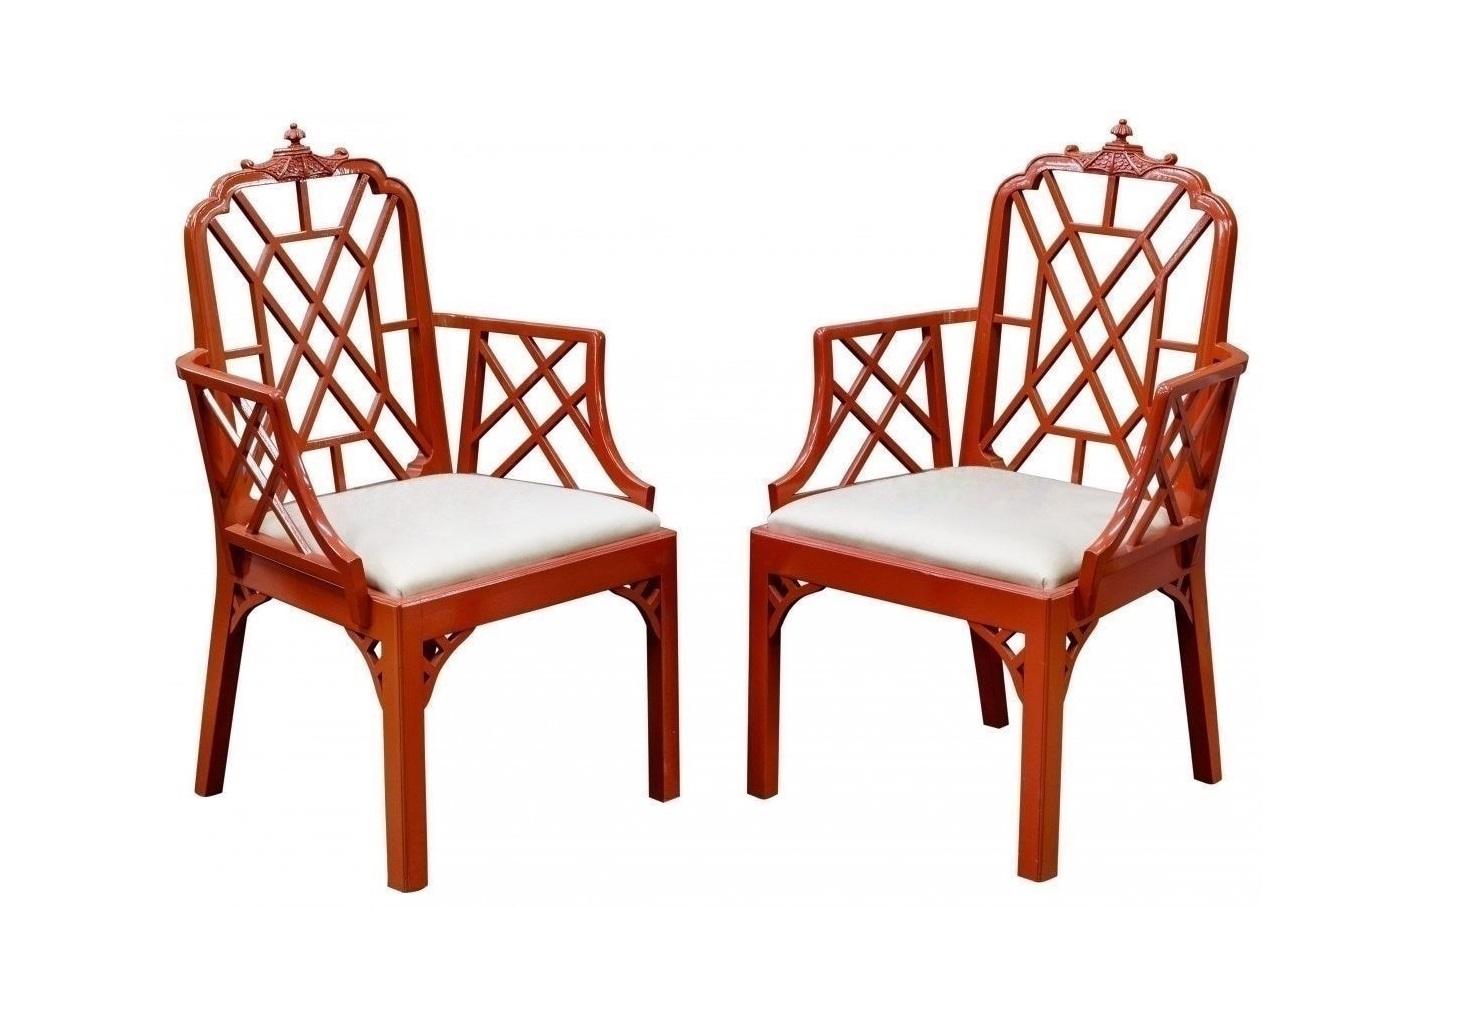 Bel ensemble de 6 chaises de salle à manger vintage Chippendale chinoiserie Pagode. Cet ensemble comprend 2 bras et 4 chaises latérales. Les cadres ont fait l'objet d'une finition professionnelle dans une laque rouge saumon, d'un nouveau rembourrage